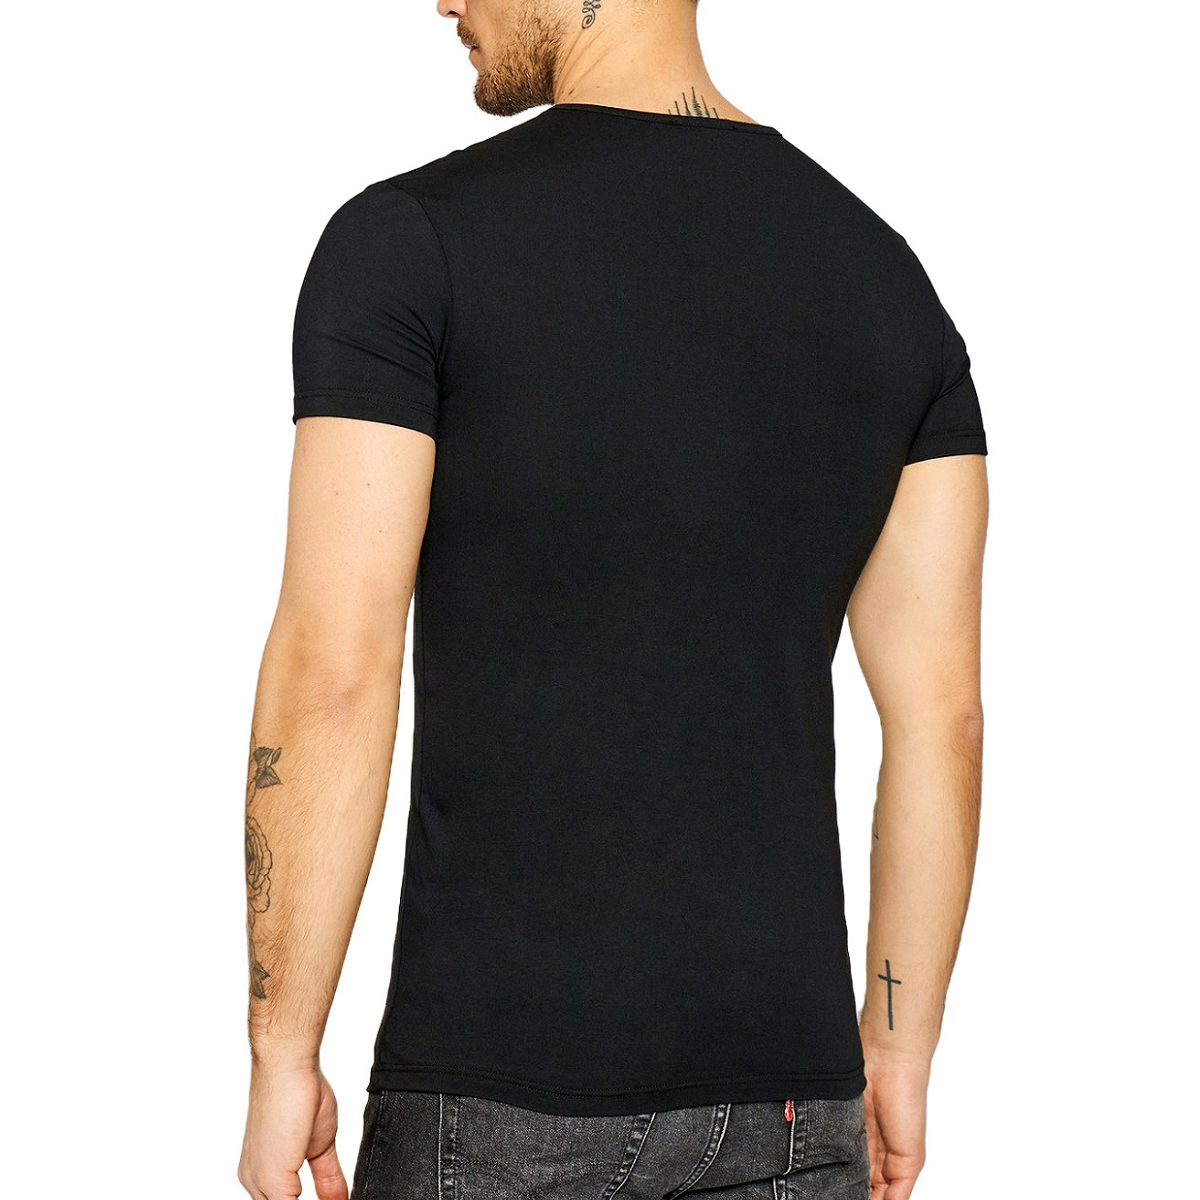 送料無料 7 VERSACE ヴェルサーチ 新品本物 AUU01005A232741 メデューサ ブラック Tシャツ size L (ITALY size 5)